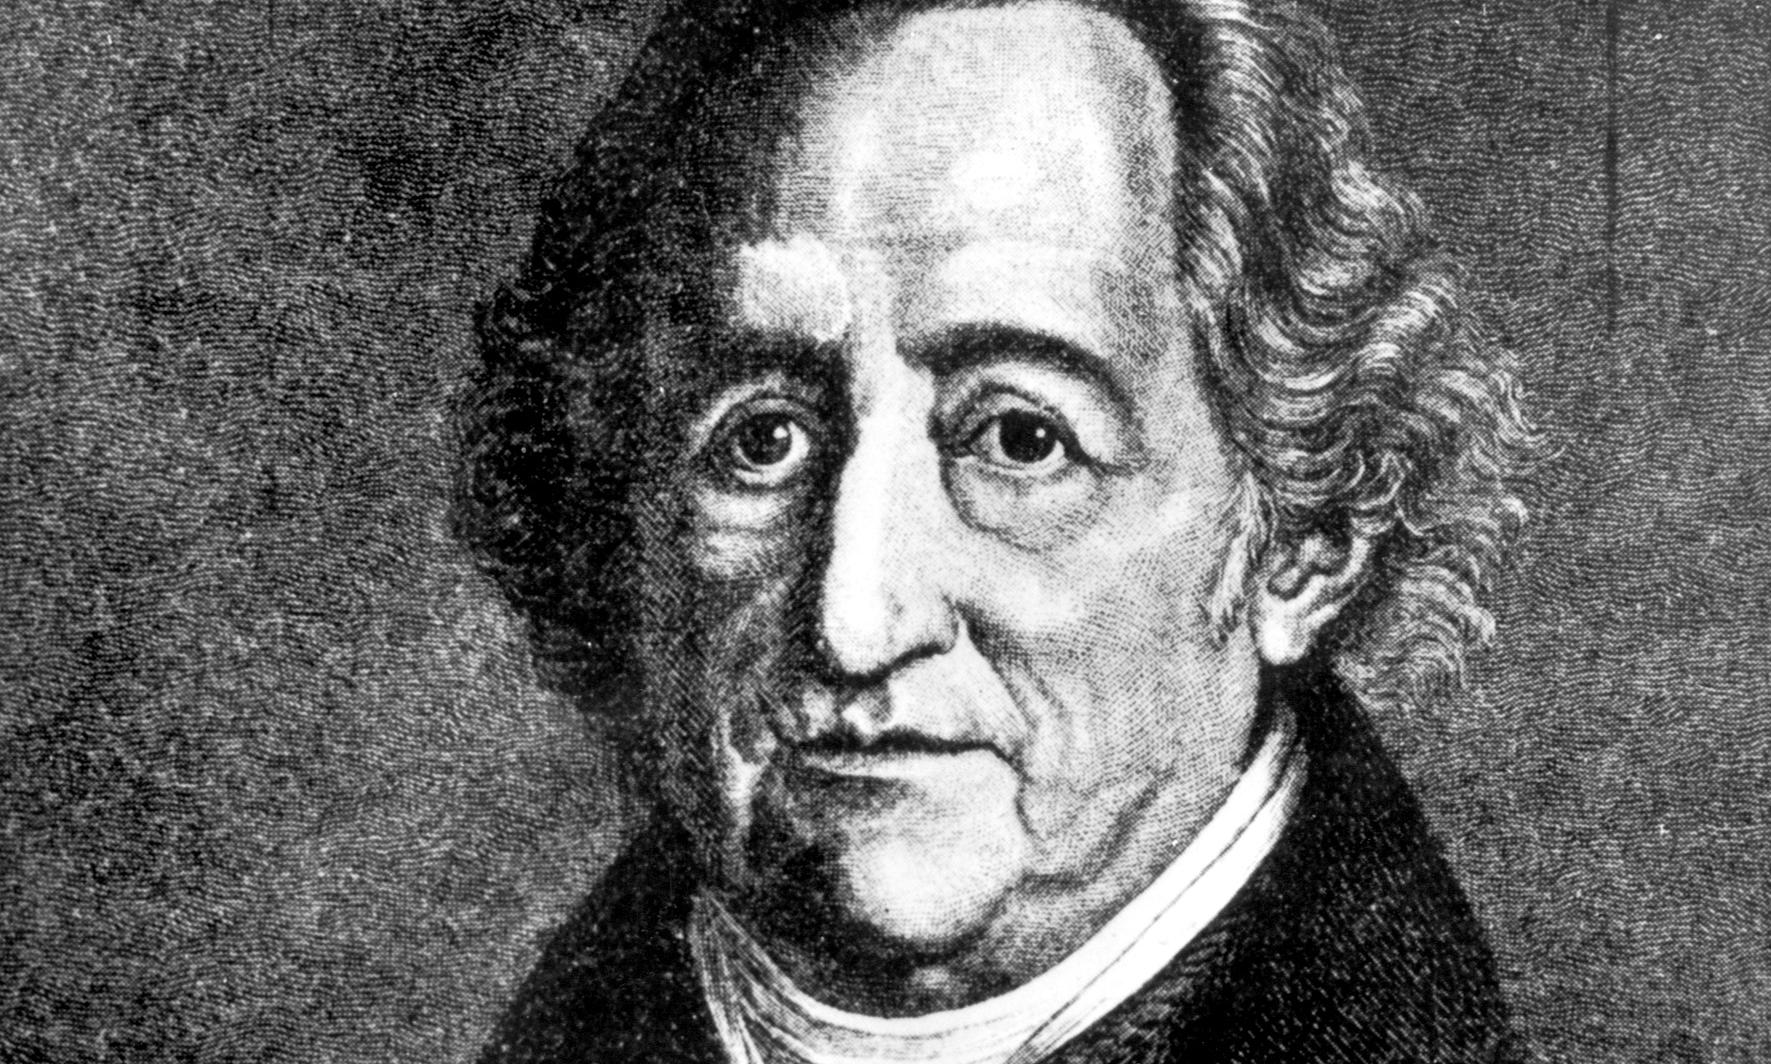 Johann Wolfgang Goethe skrev bland annat romanerna ”Faust” och ”Den unge Werthers lidande” men ingick också i den intellektuella Jena-kretsen